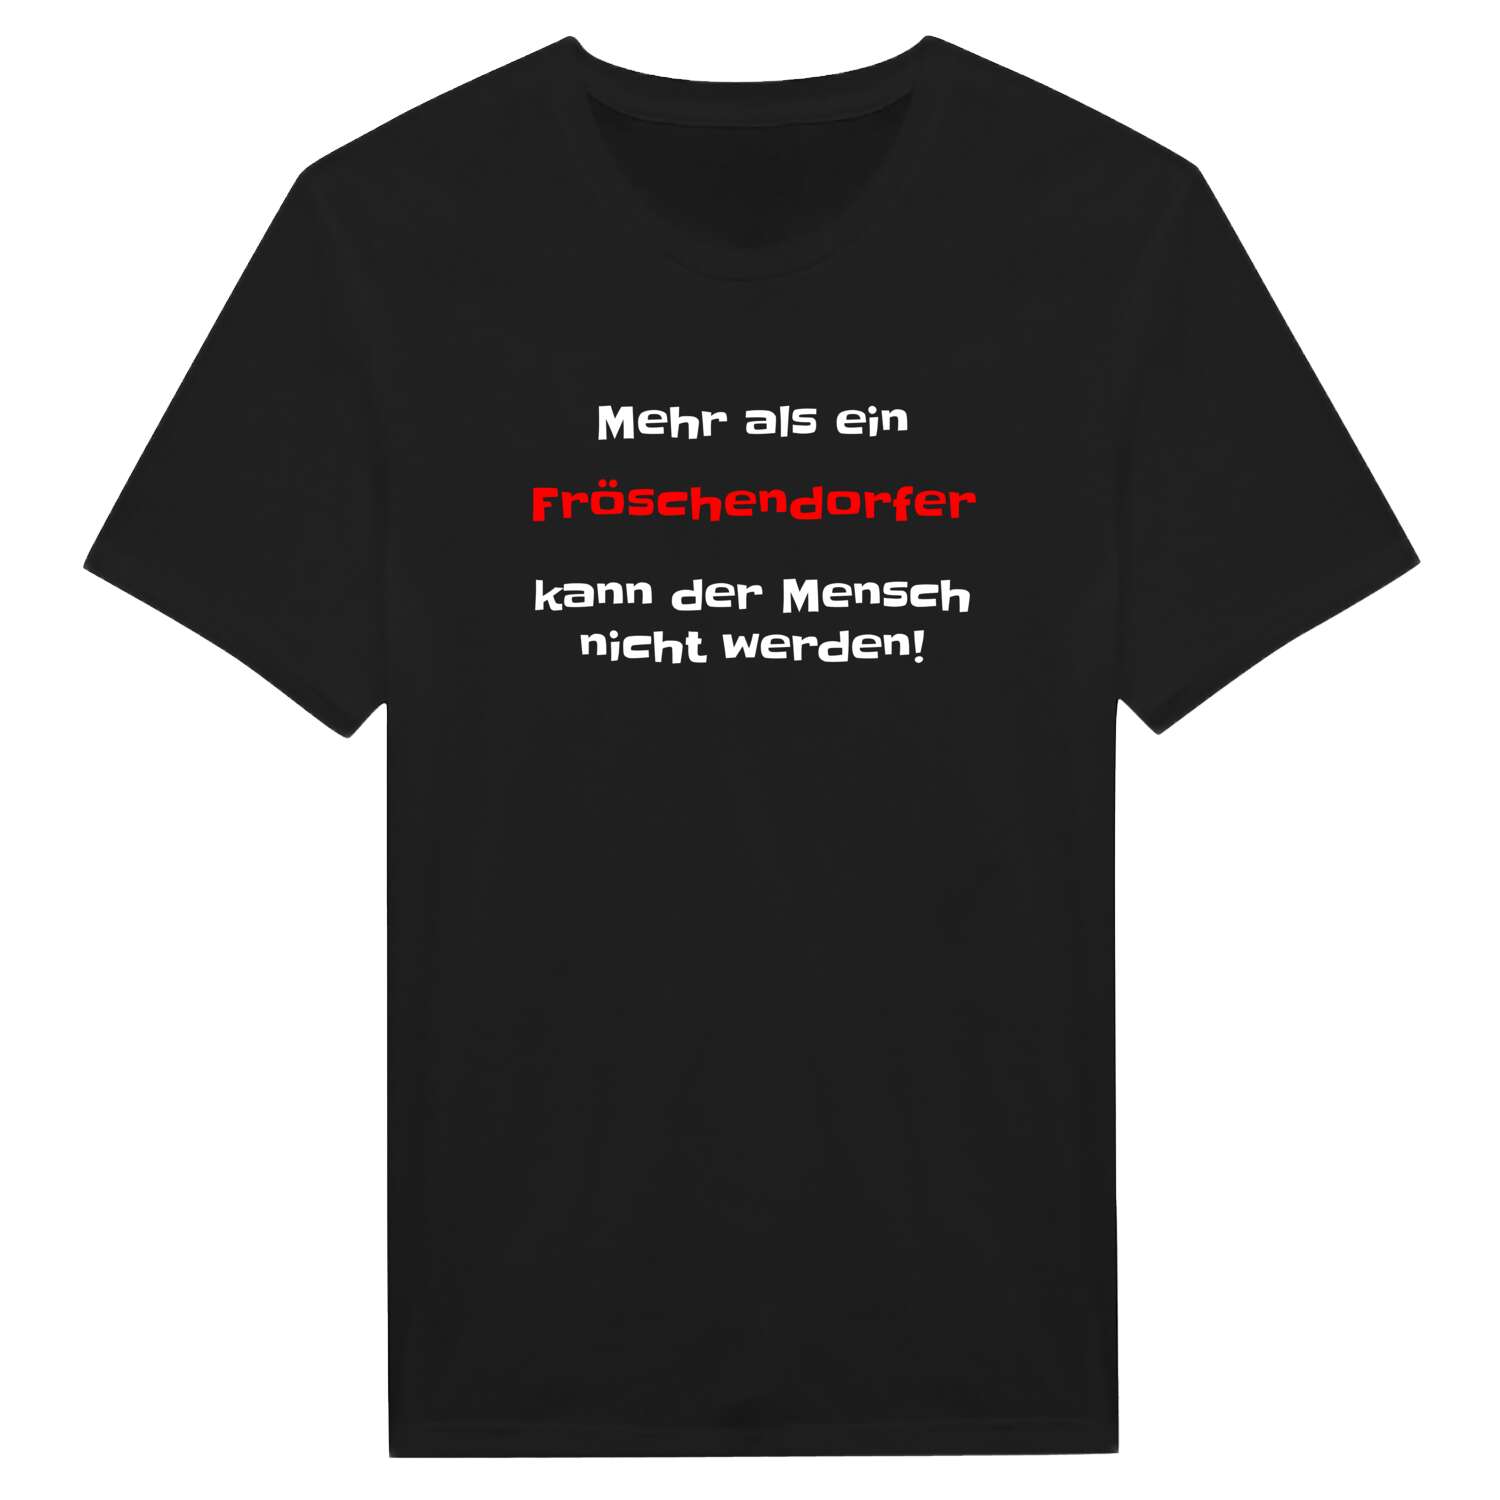 Fröschendorf T-Shirt »Mehr als ein«